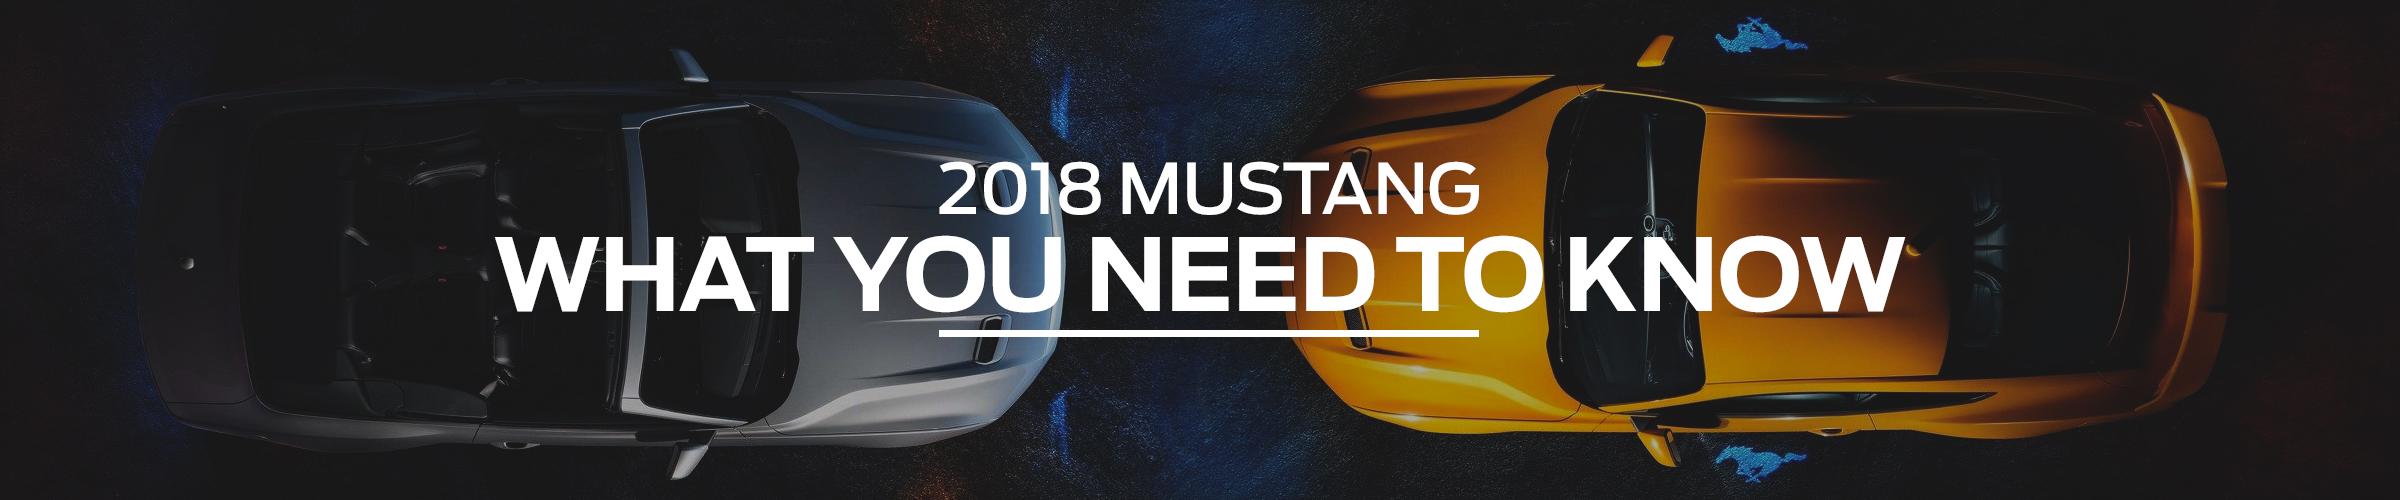 2018 Mustang Specs, News, & Information